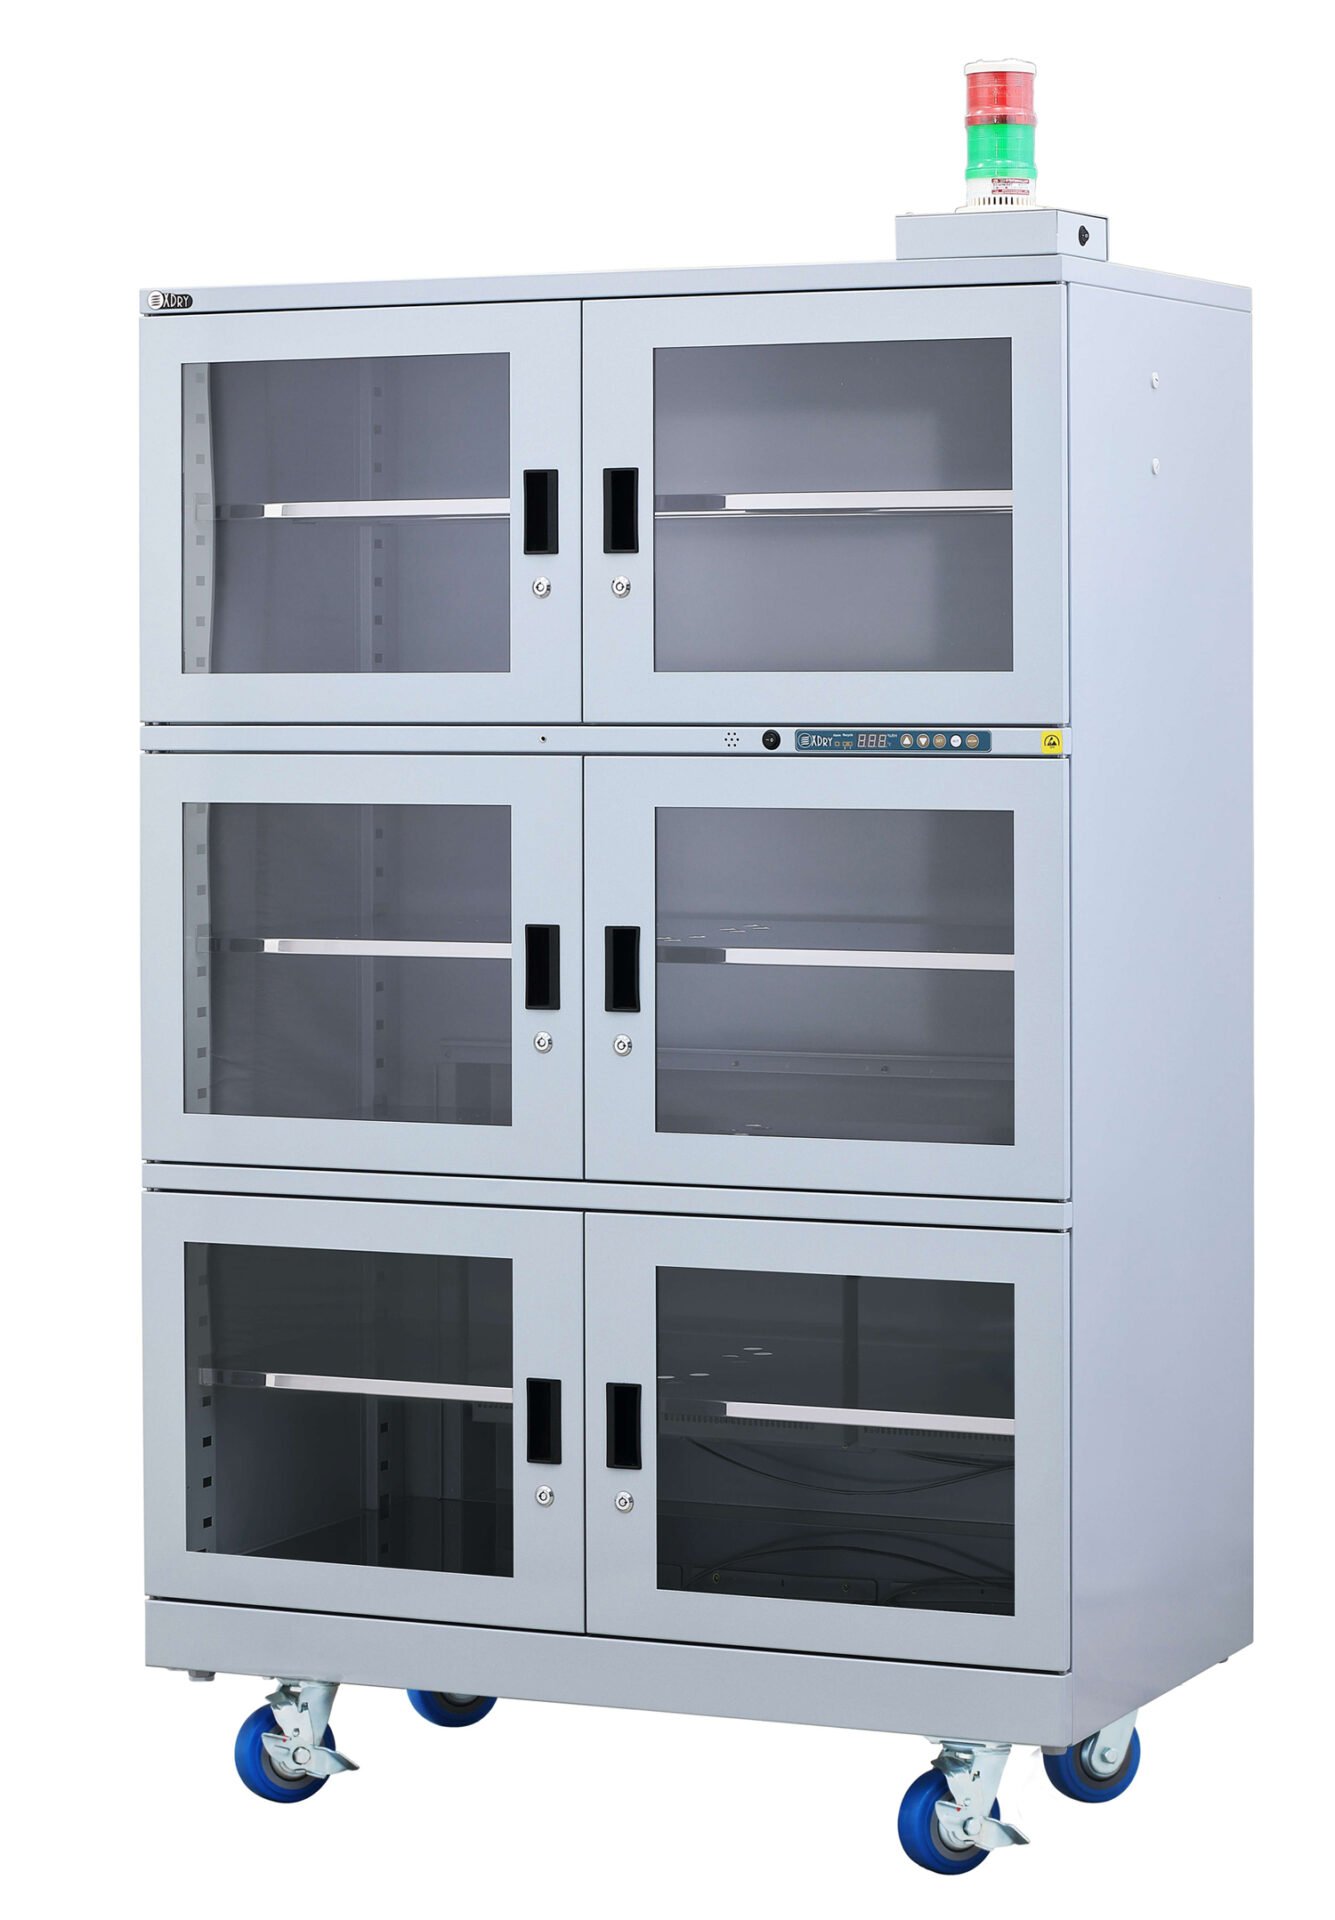 Dry Cabinet Ipc Jedec 033 020